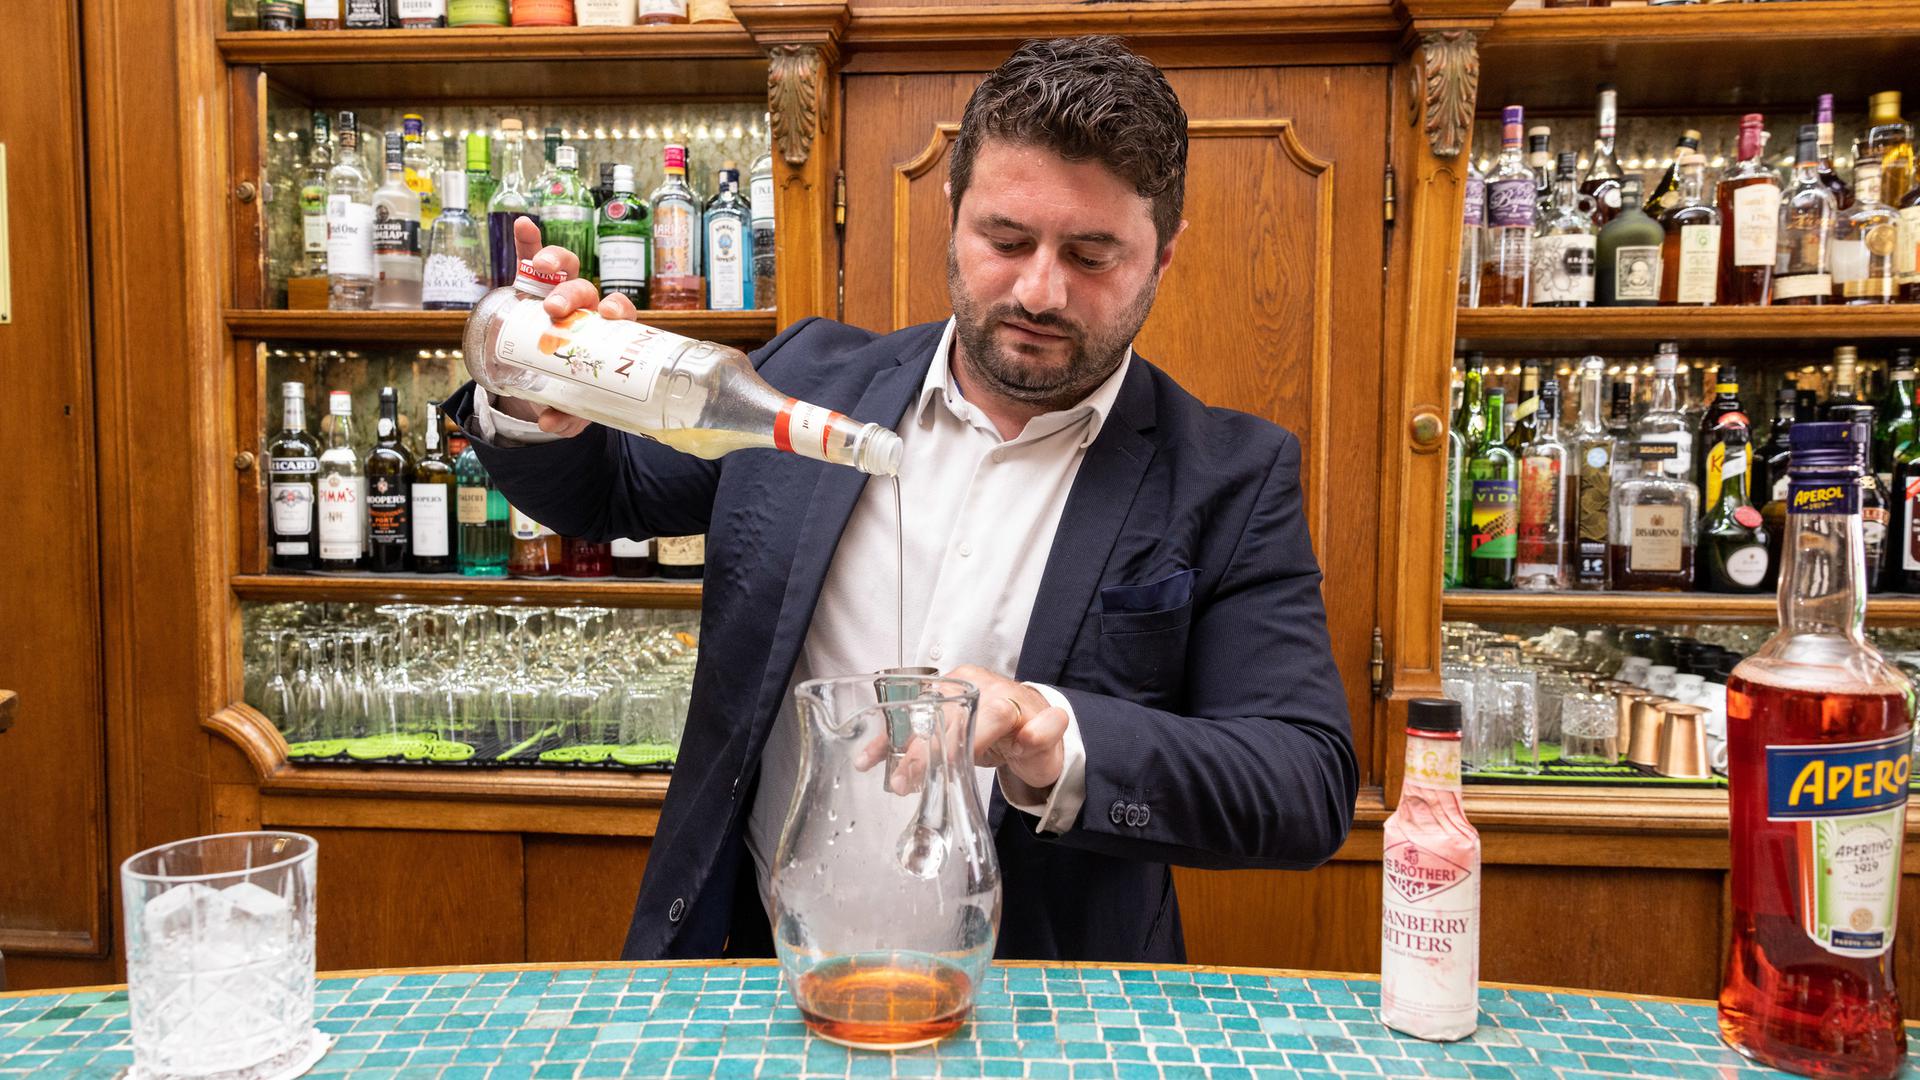 Marius Bîrzan prépare son cocktail 369, de sa propre création. Il le présentera au championnat du monde à Cuba.